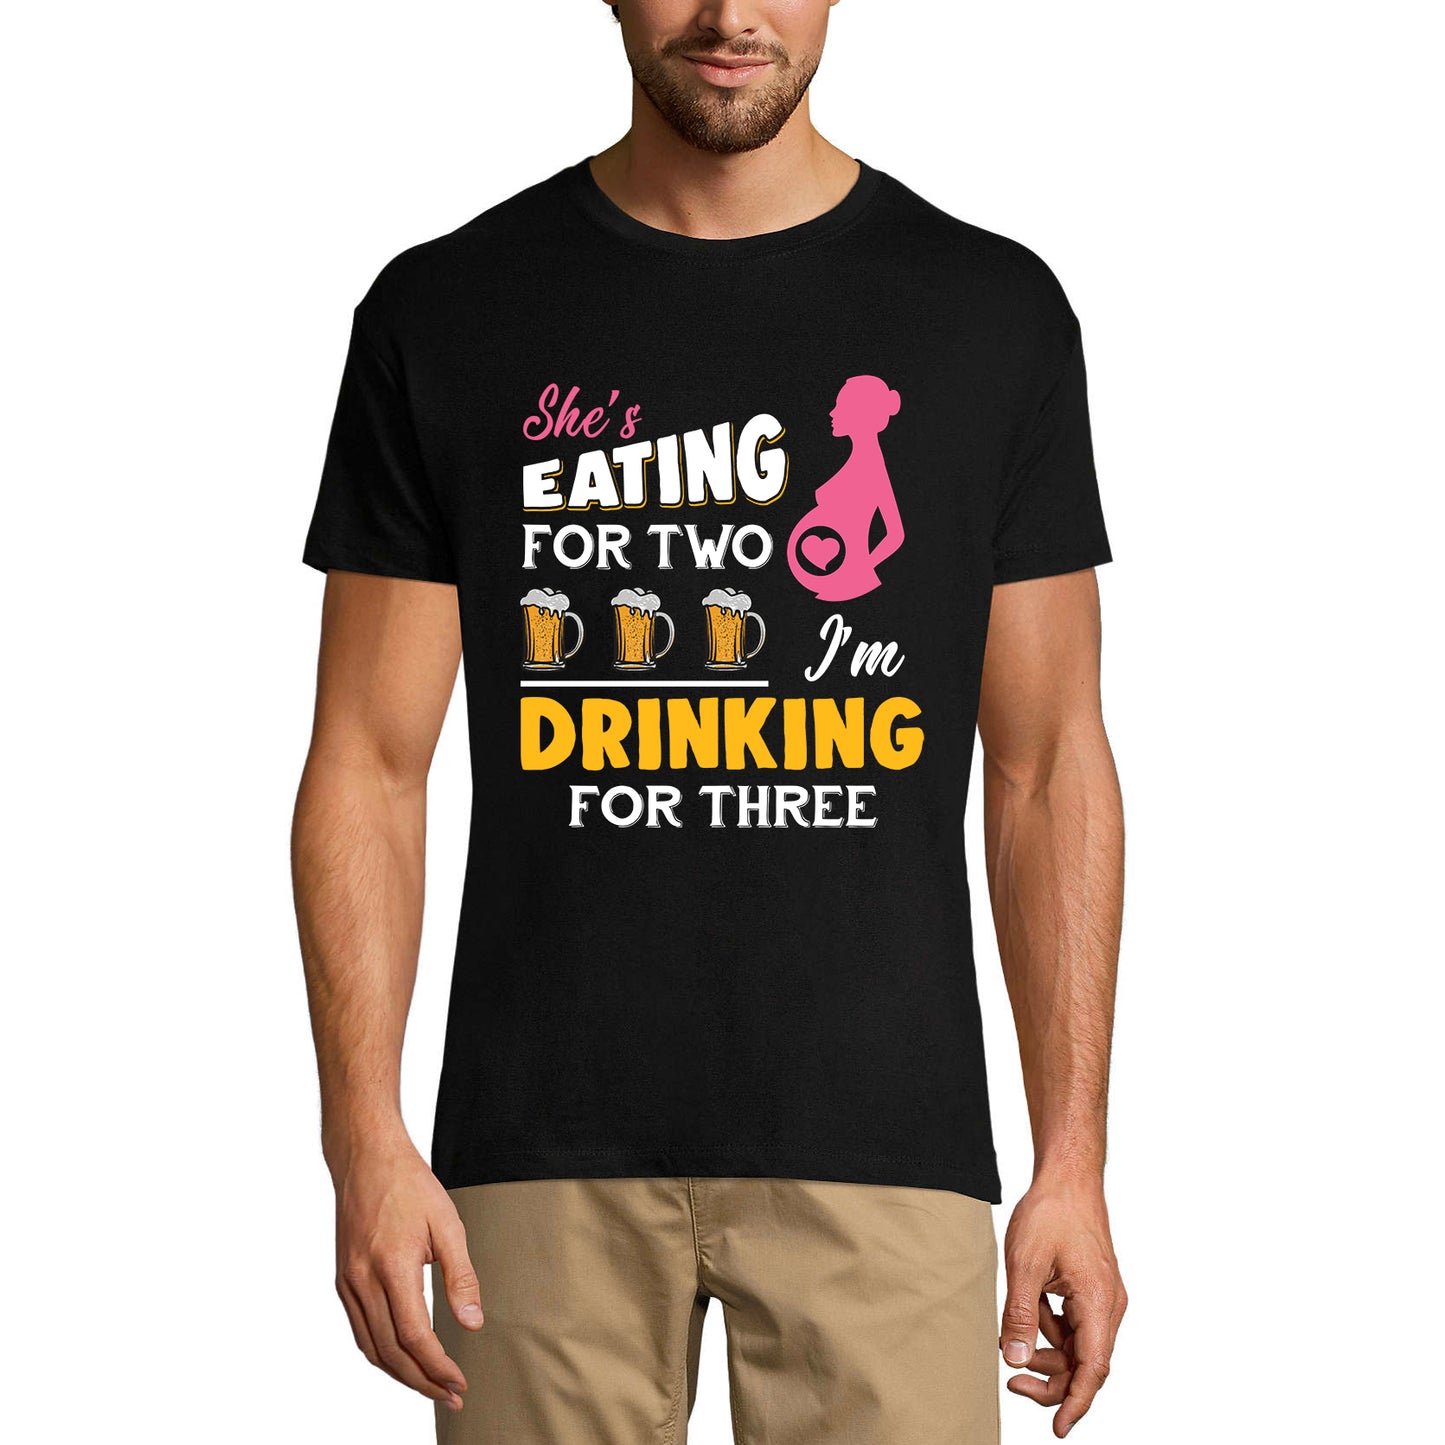 ULTRABASIC Men's Funny T-Shirt She's Eating For 2 - I'm Drinking For 3 - Beer Lover Couple Tee Shirt